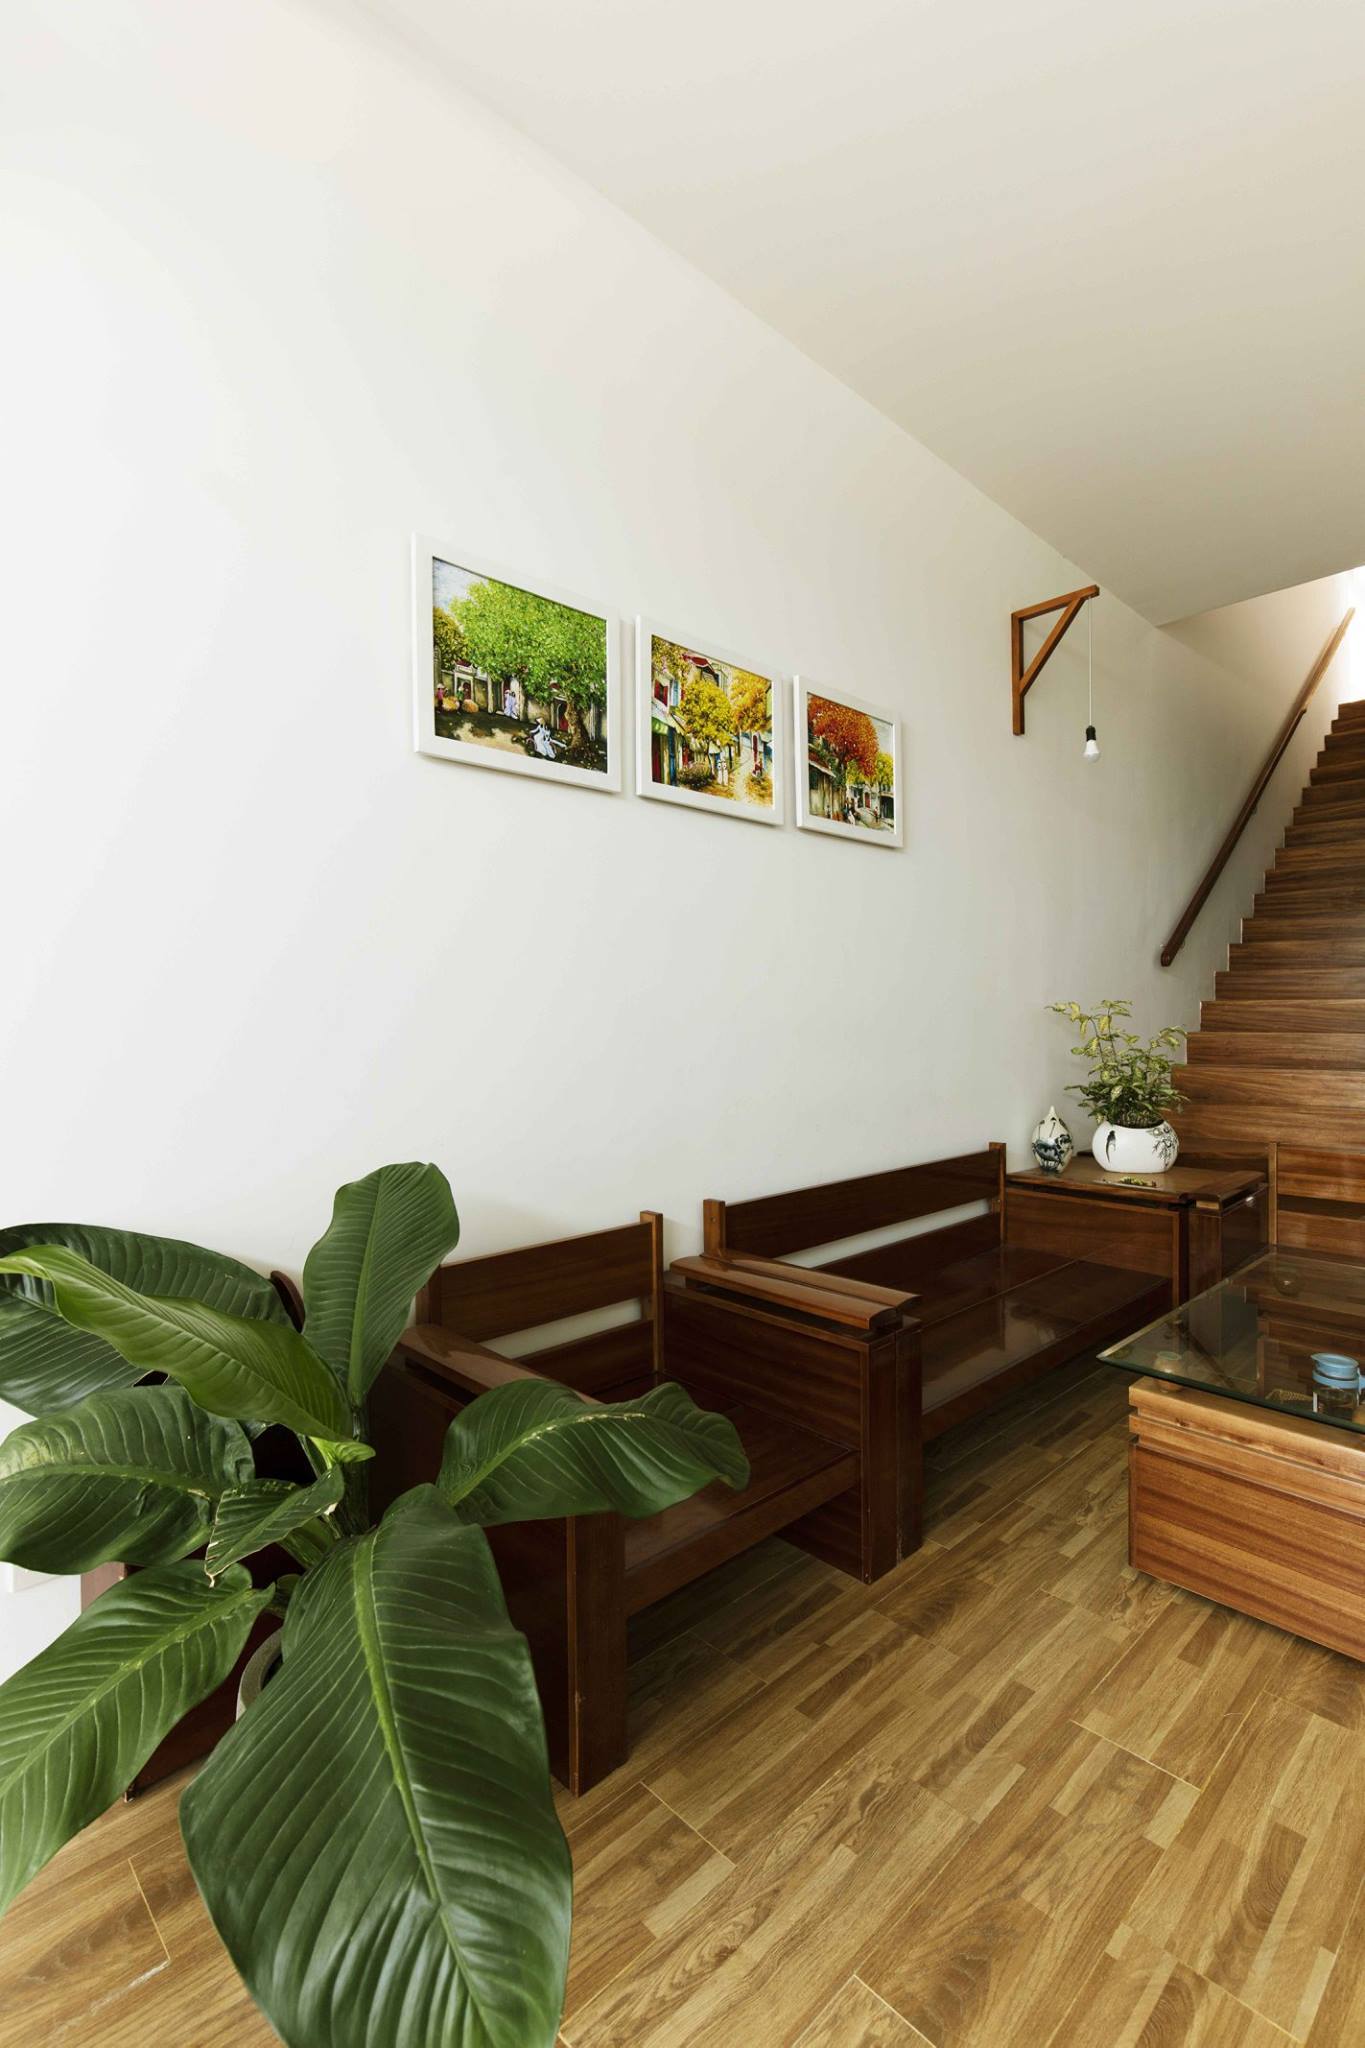 Ngôi nhà được “vẽ” bởi vườn rau, vệt nắng và nội thất cũ